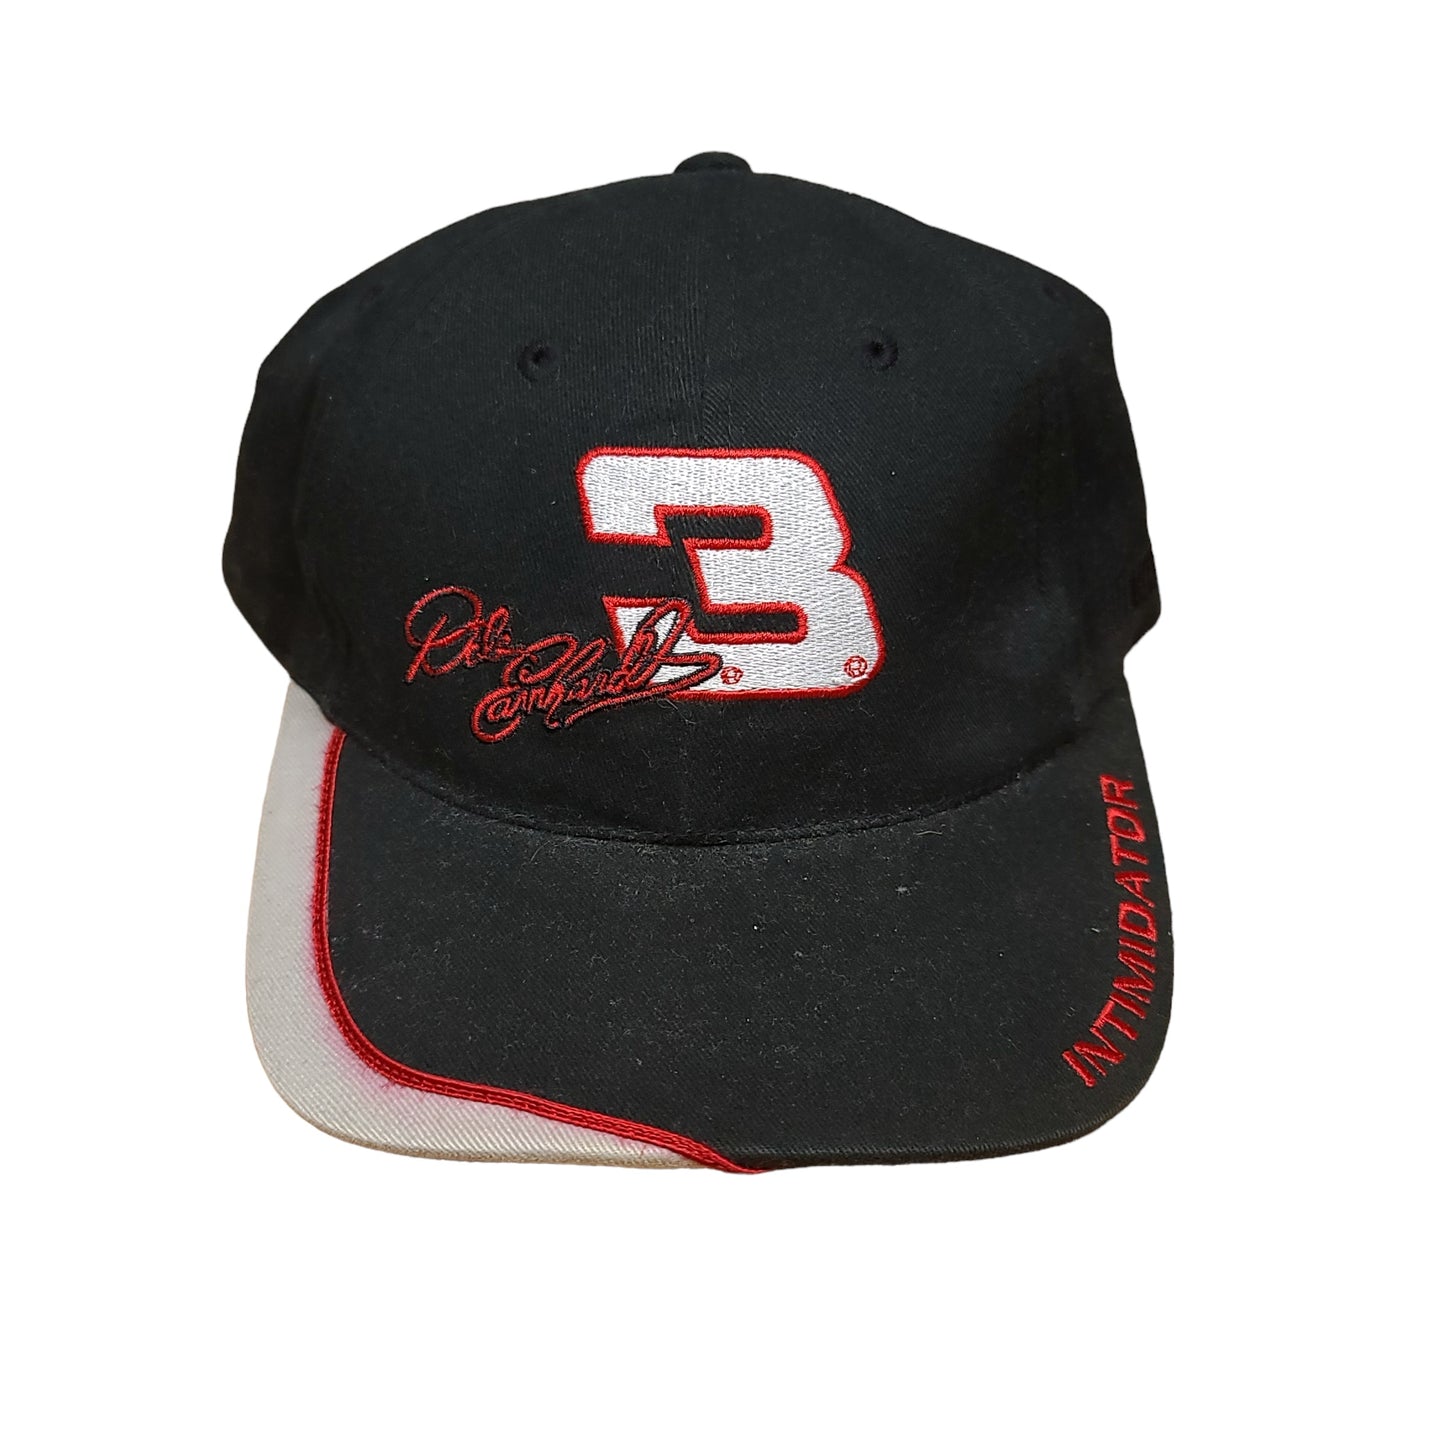 Vintage Dale Earnheardt Intimidator Nascar Racing Strap Back Hat